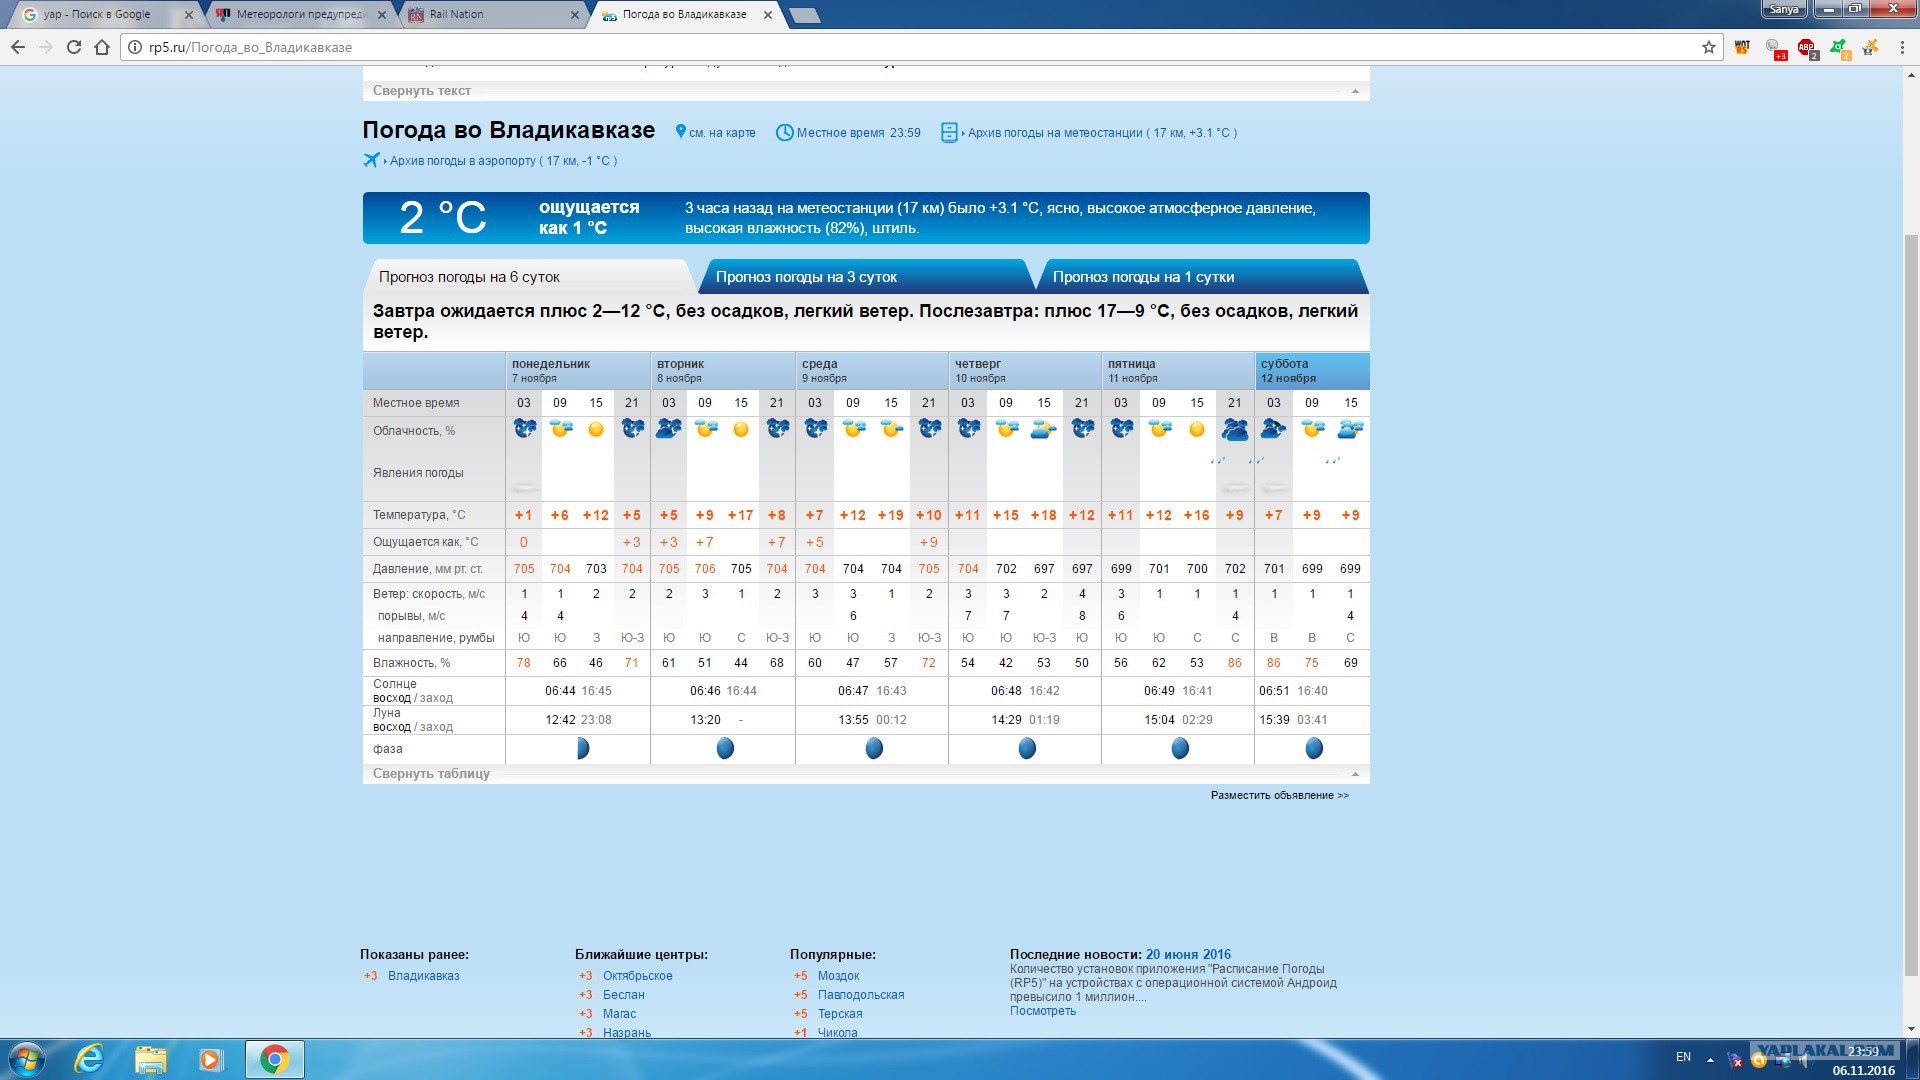 Прогноз по часам на сегодня владикавказ. Погода на завтра. Погода во Владикавказе на завтра. Владикавказ климат по месяцам. Погода на сегодня и на неделю.